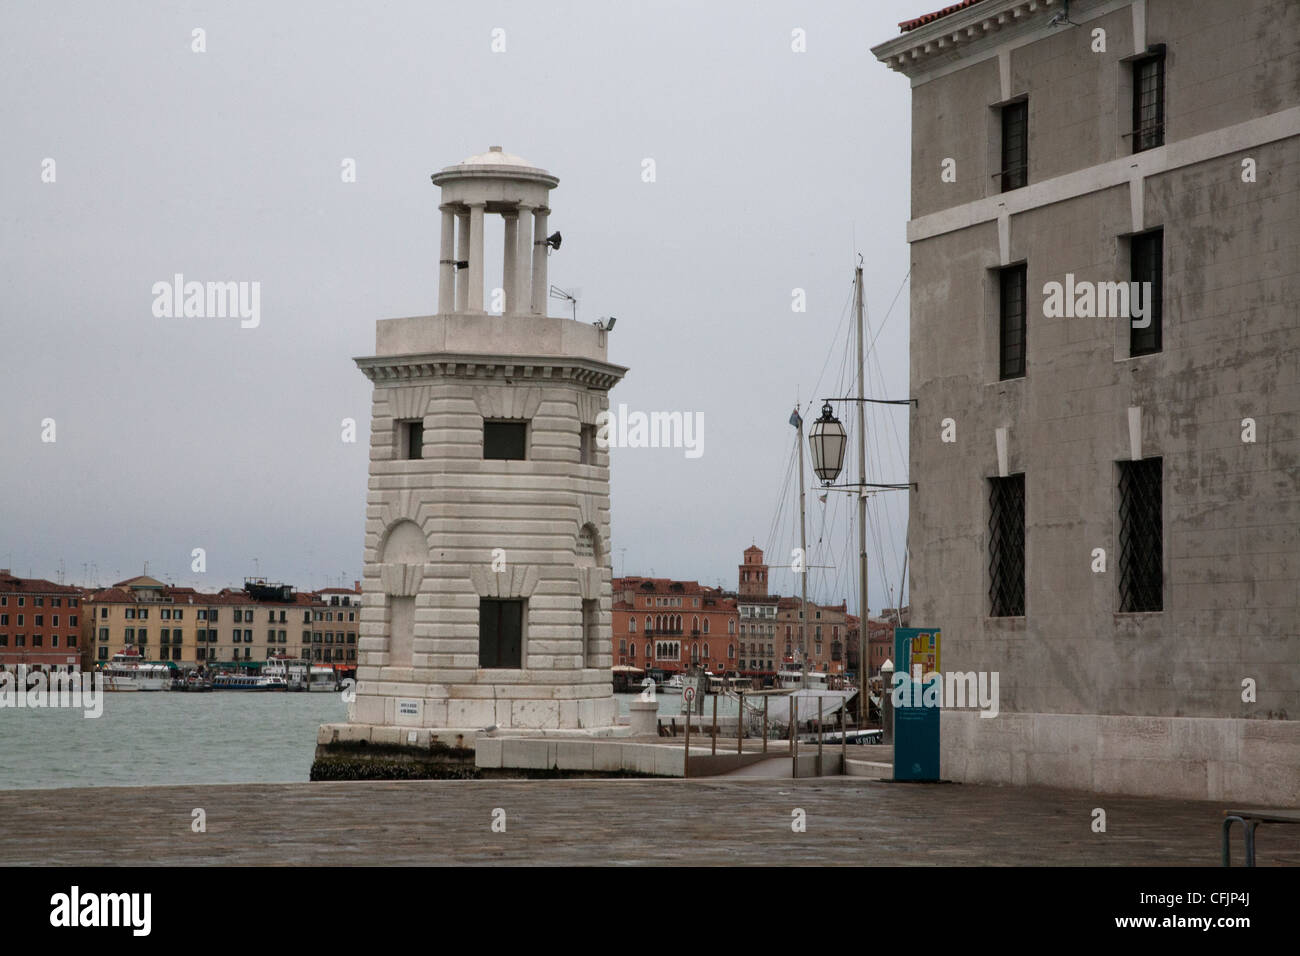 Le phare sur l'île de San Giorgio Maggiore Venise Italie Banque D'Images